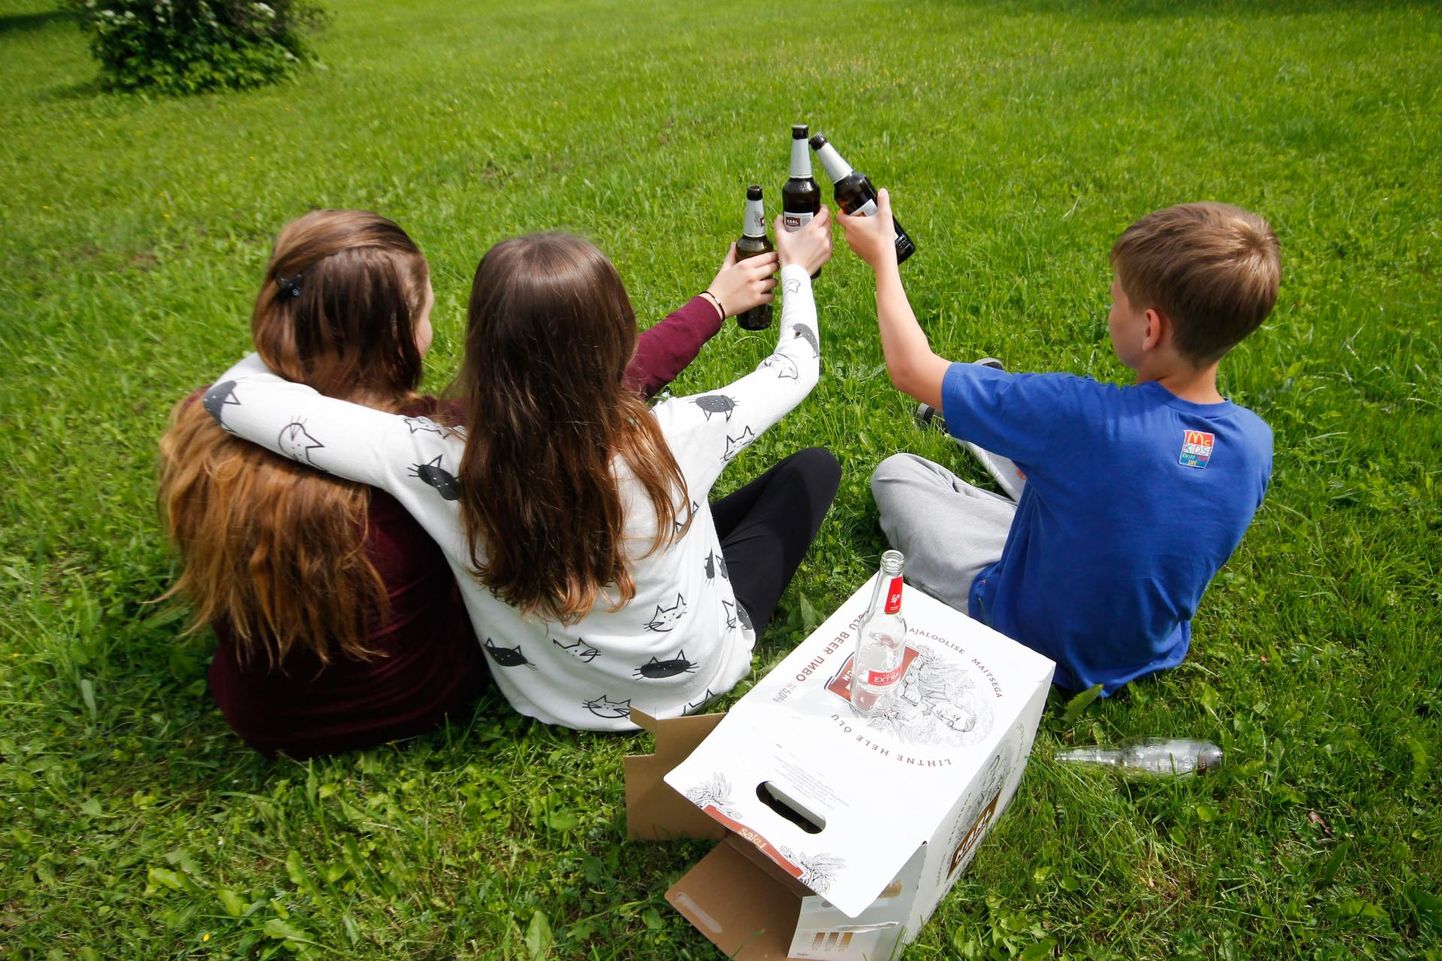 Несовершеннолетние люди, употребляющие алкоголь, доставляют полиции хлопот. Иллюстративное фото.